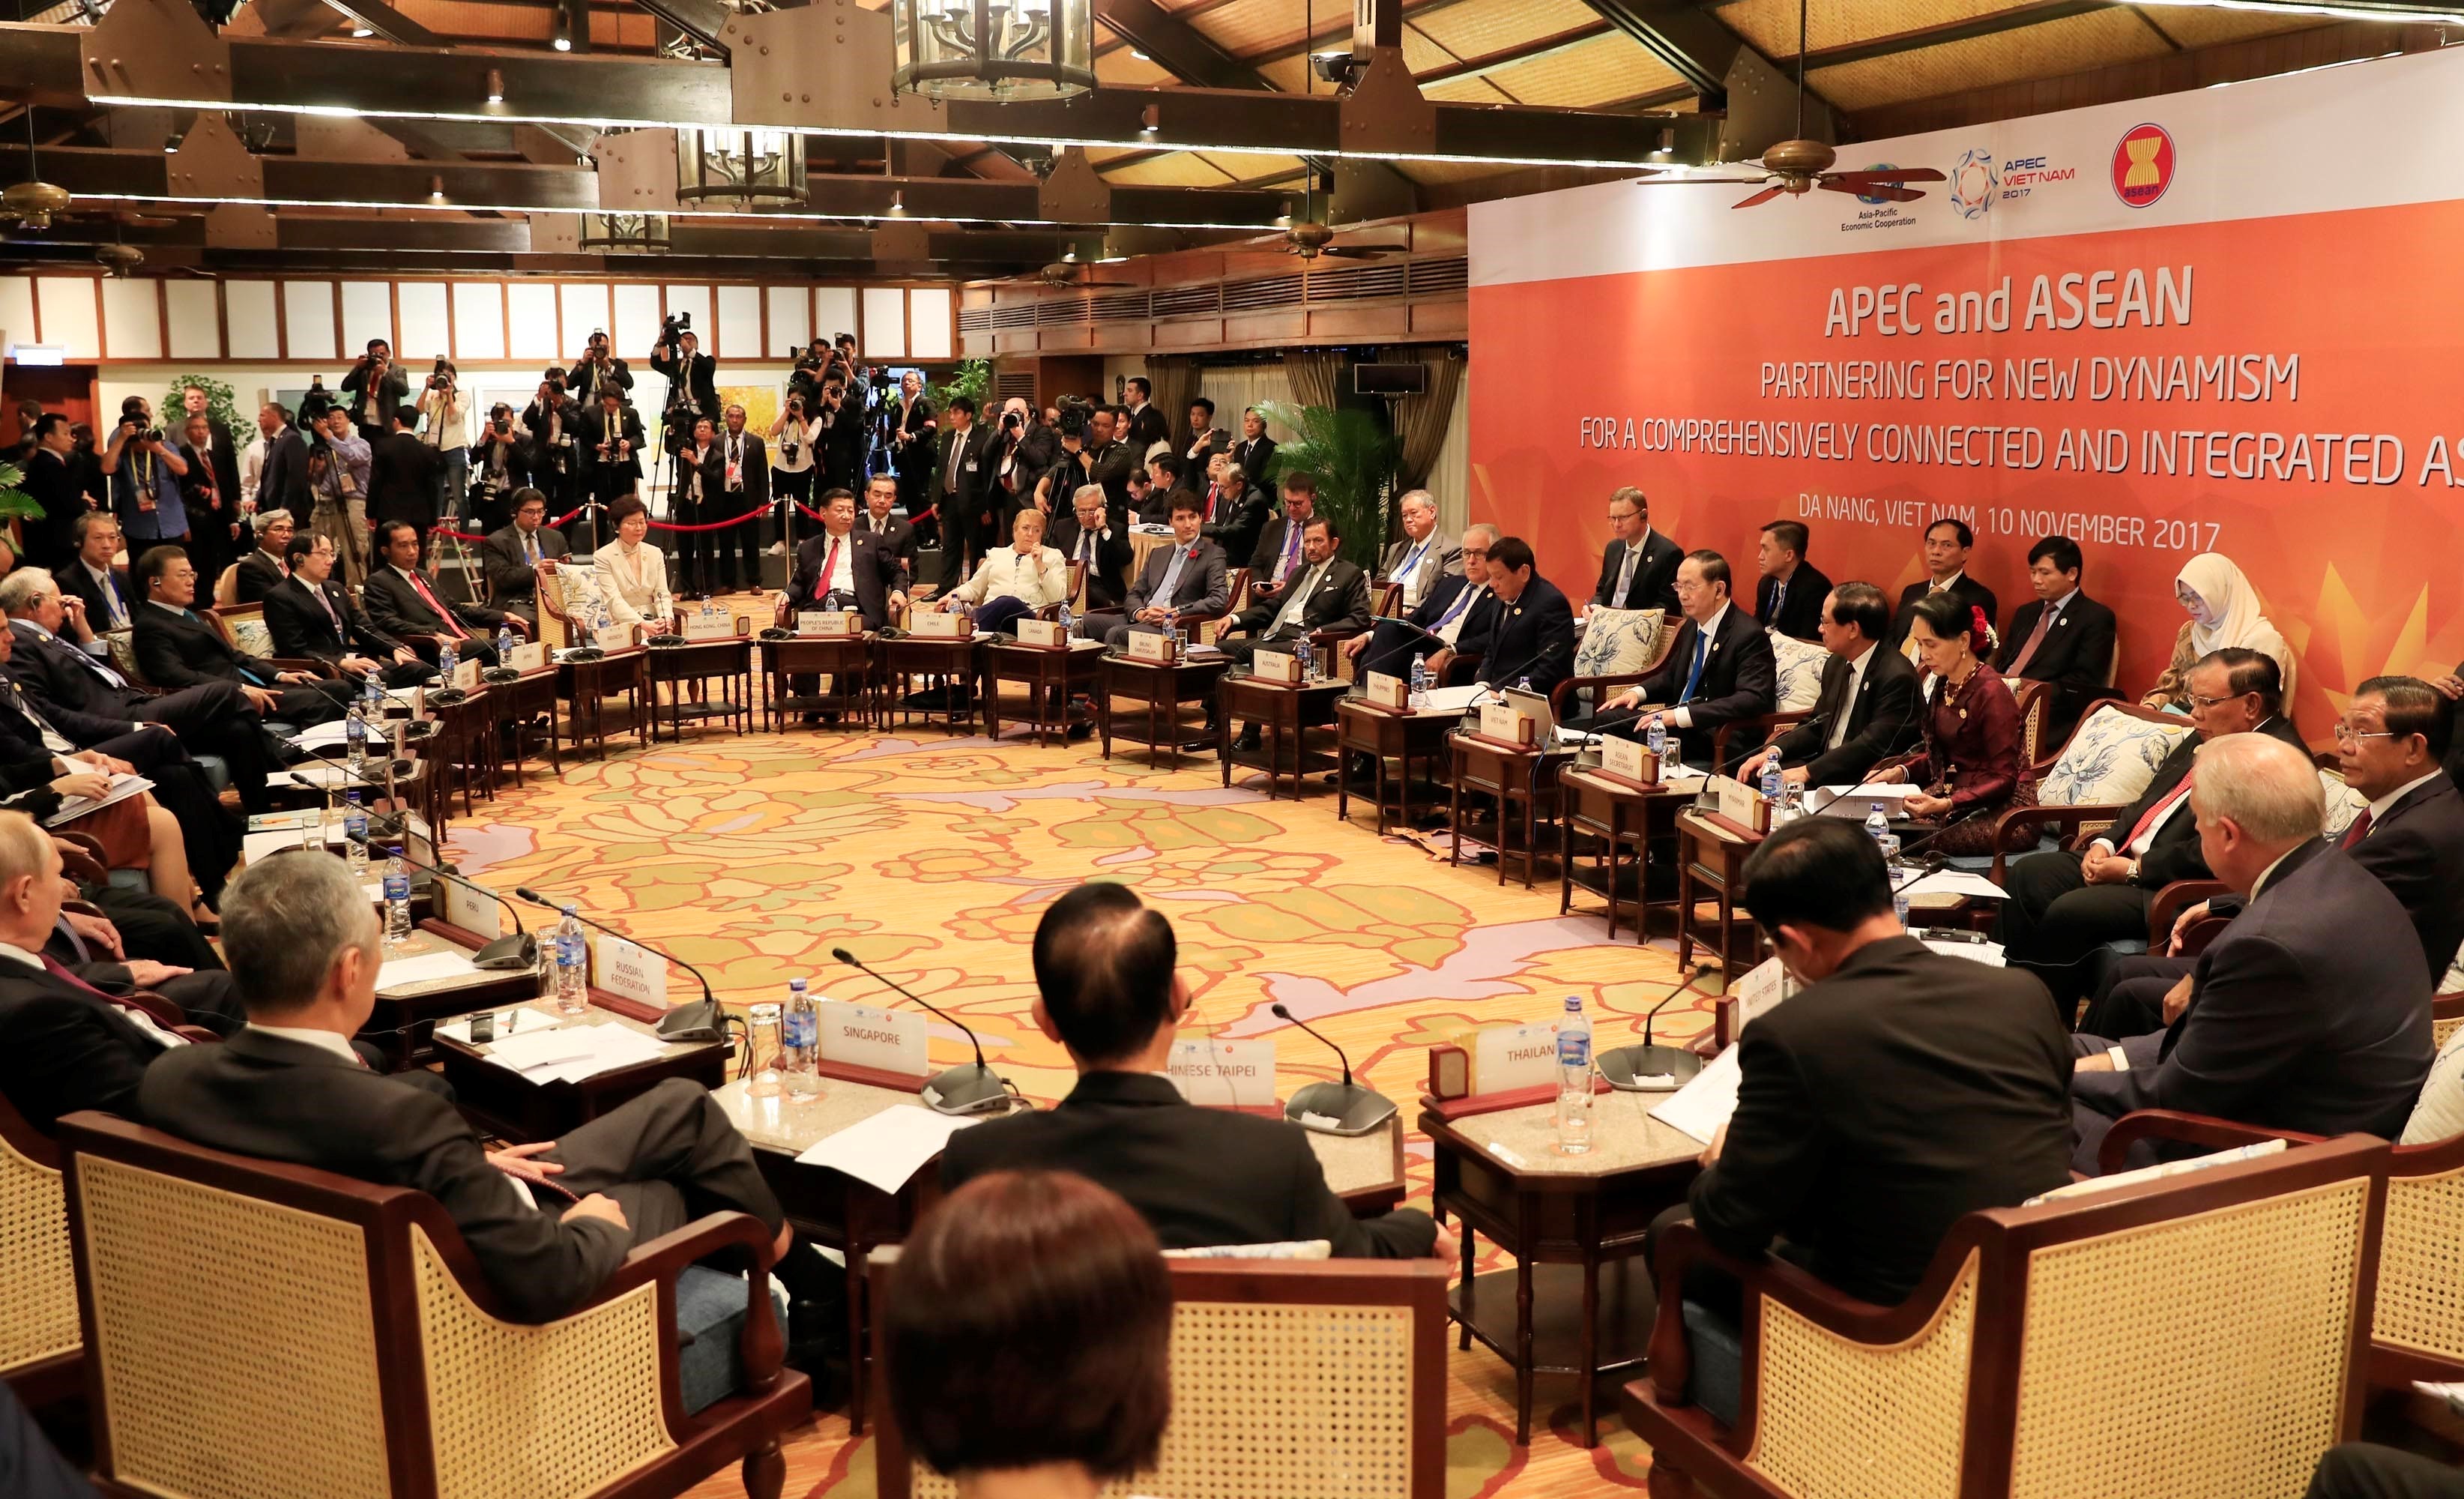 Tuyên bố báo chí của Chủ tịch Đối thoại Cấp cao không chính thức giữa APEC và ASEAN “Cùng tạo động lực mới vì một châu Á - Thái Bình Dương kết nối toàn diện”